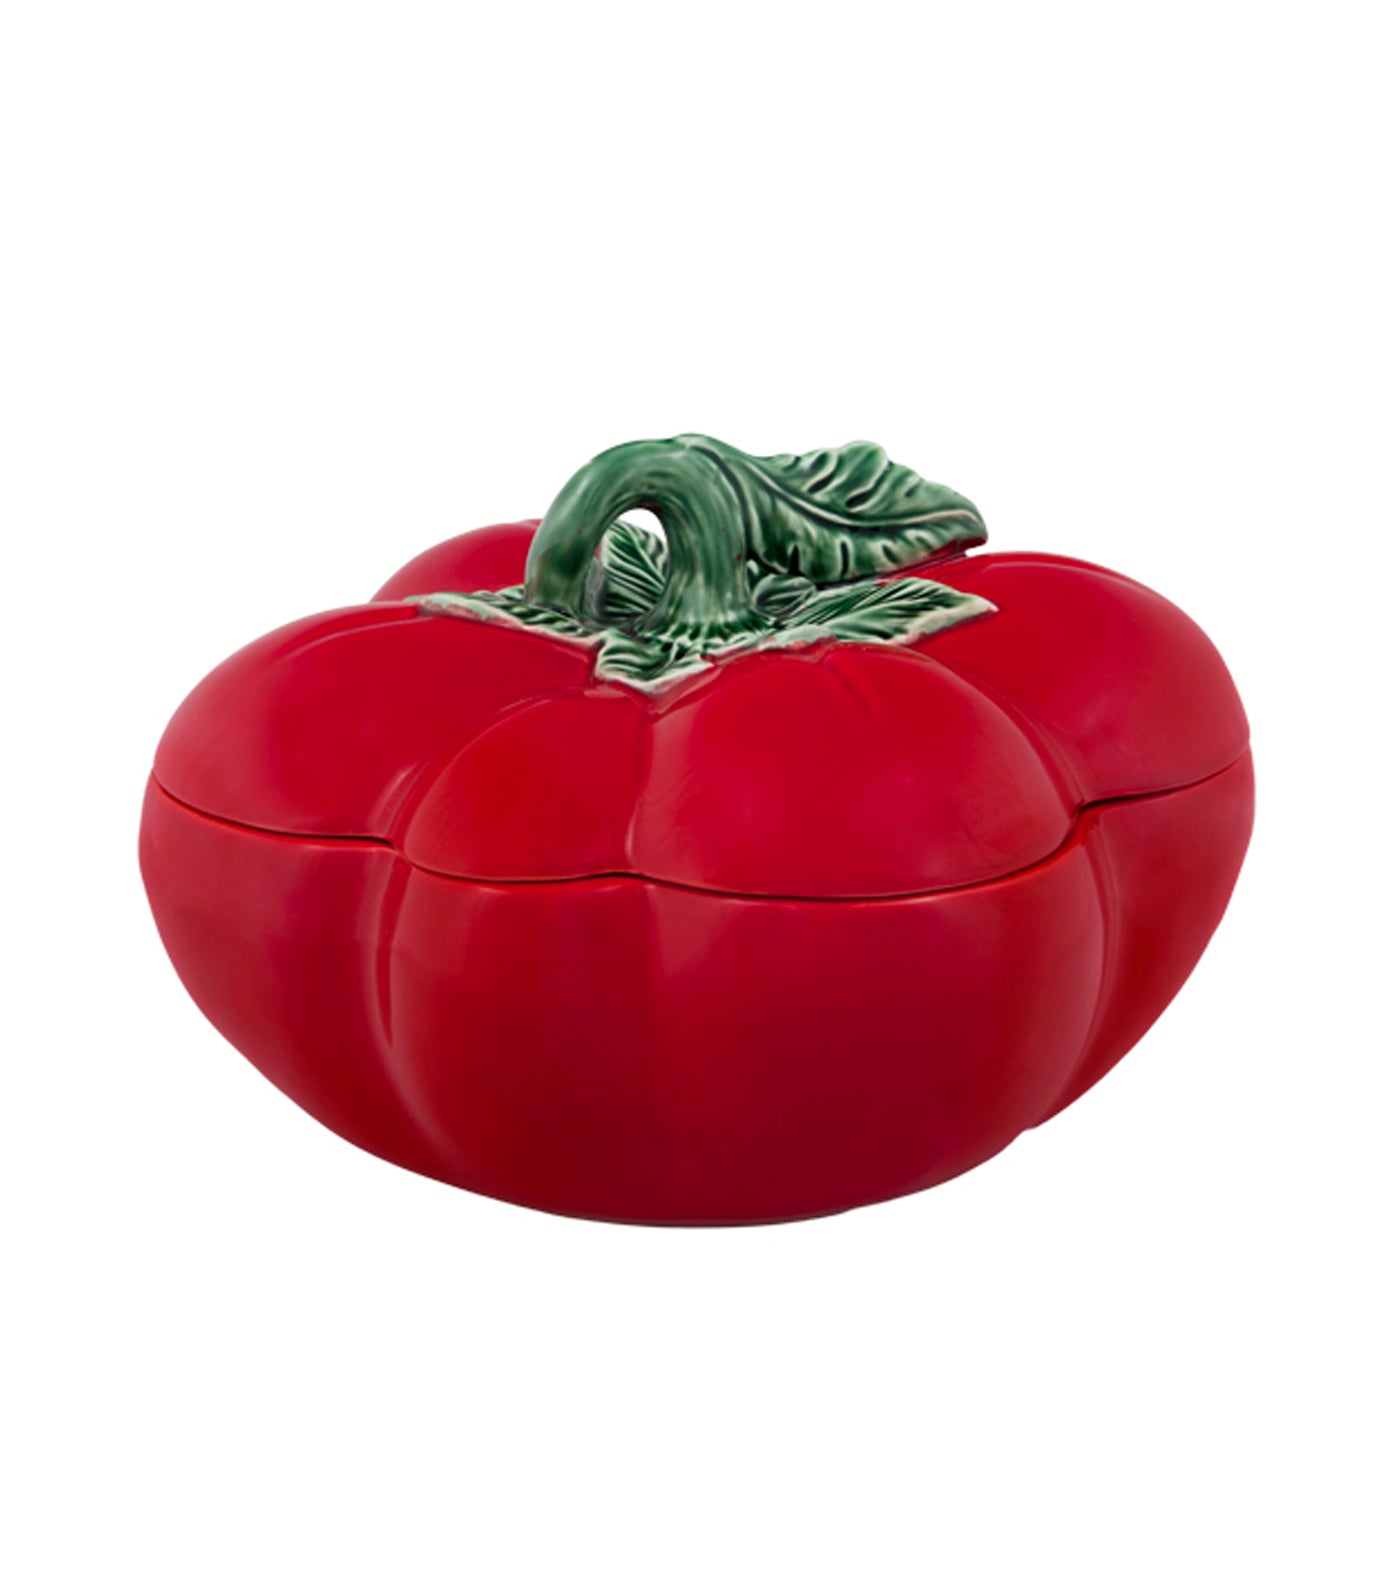 Bordallo Pinheiro Tomato Tableware Collection